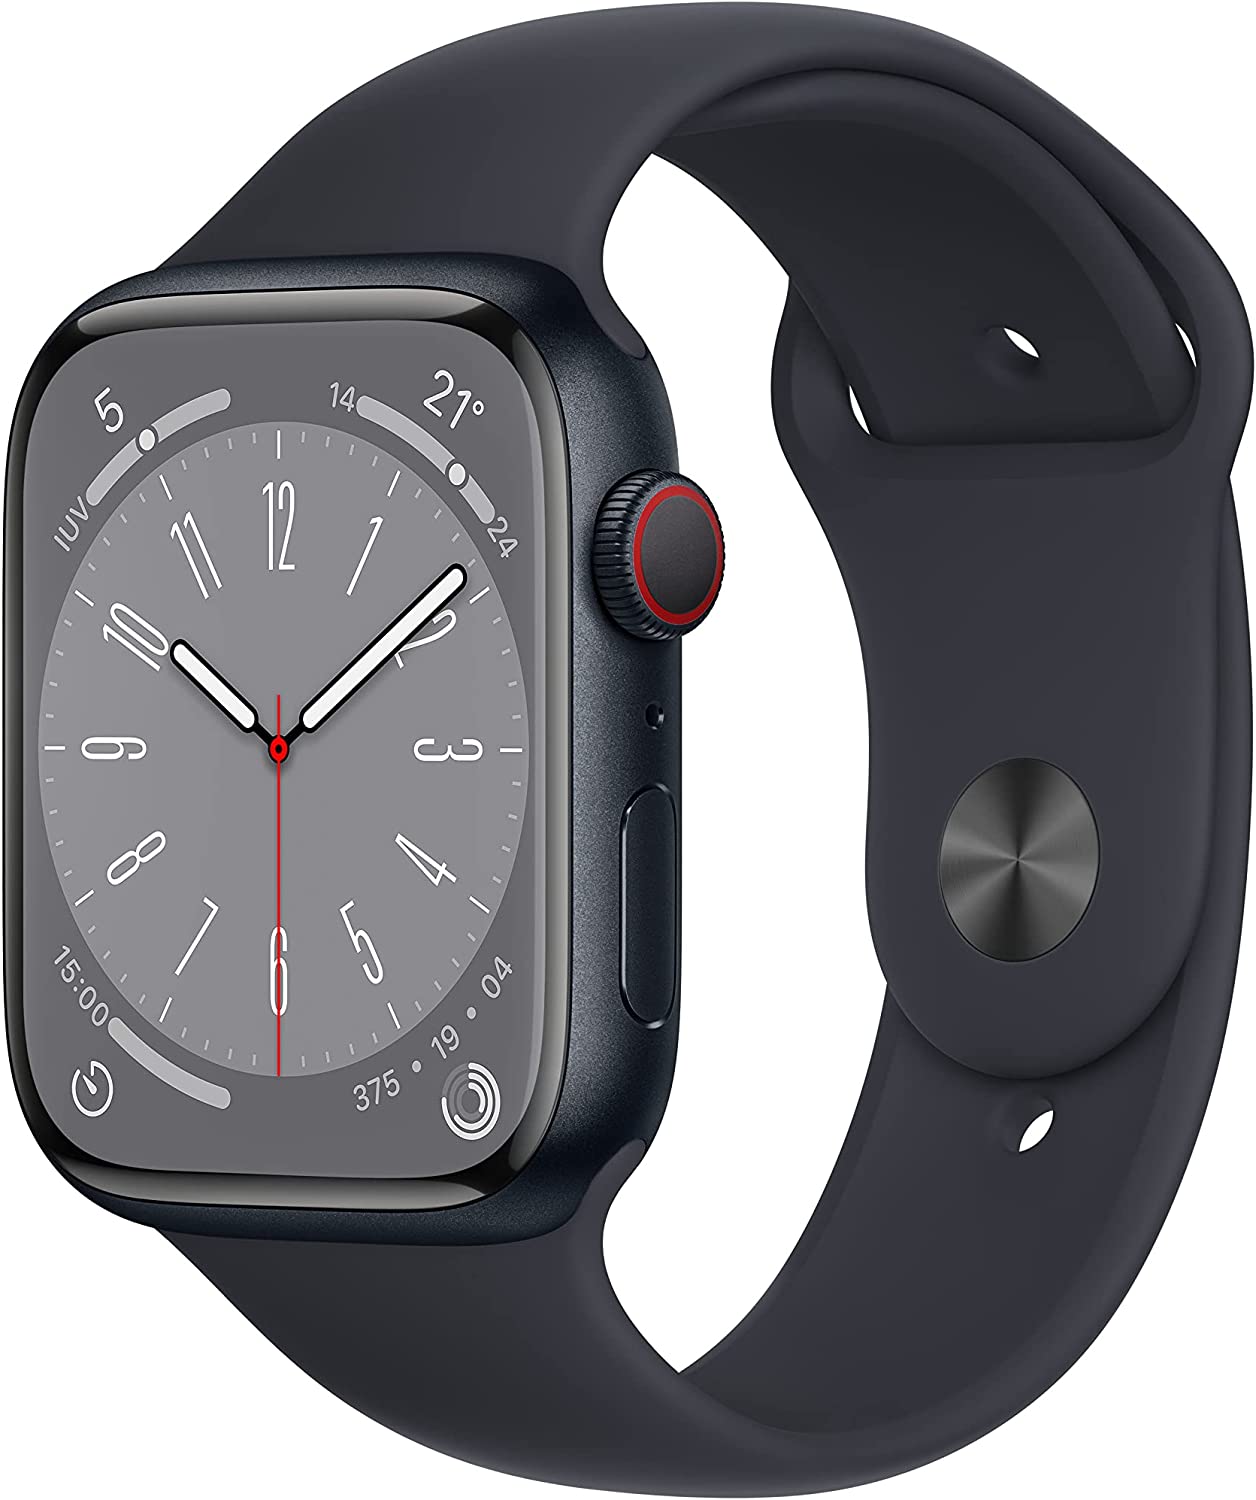 Apple Watch 8 vs Apple Watch SE 2